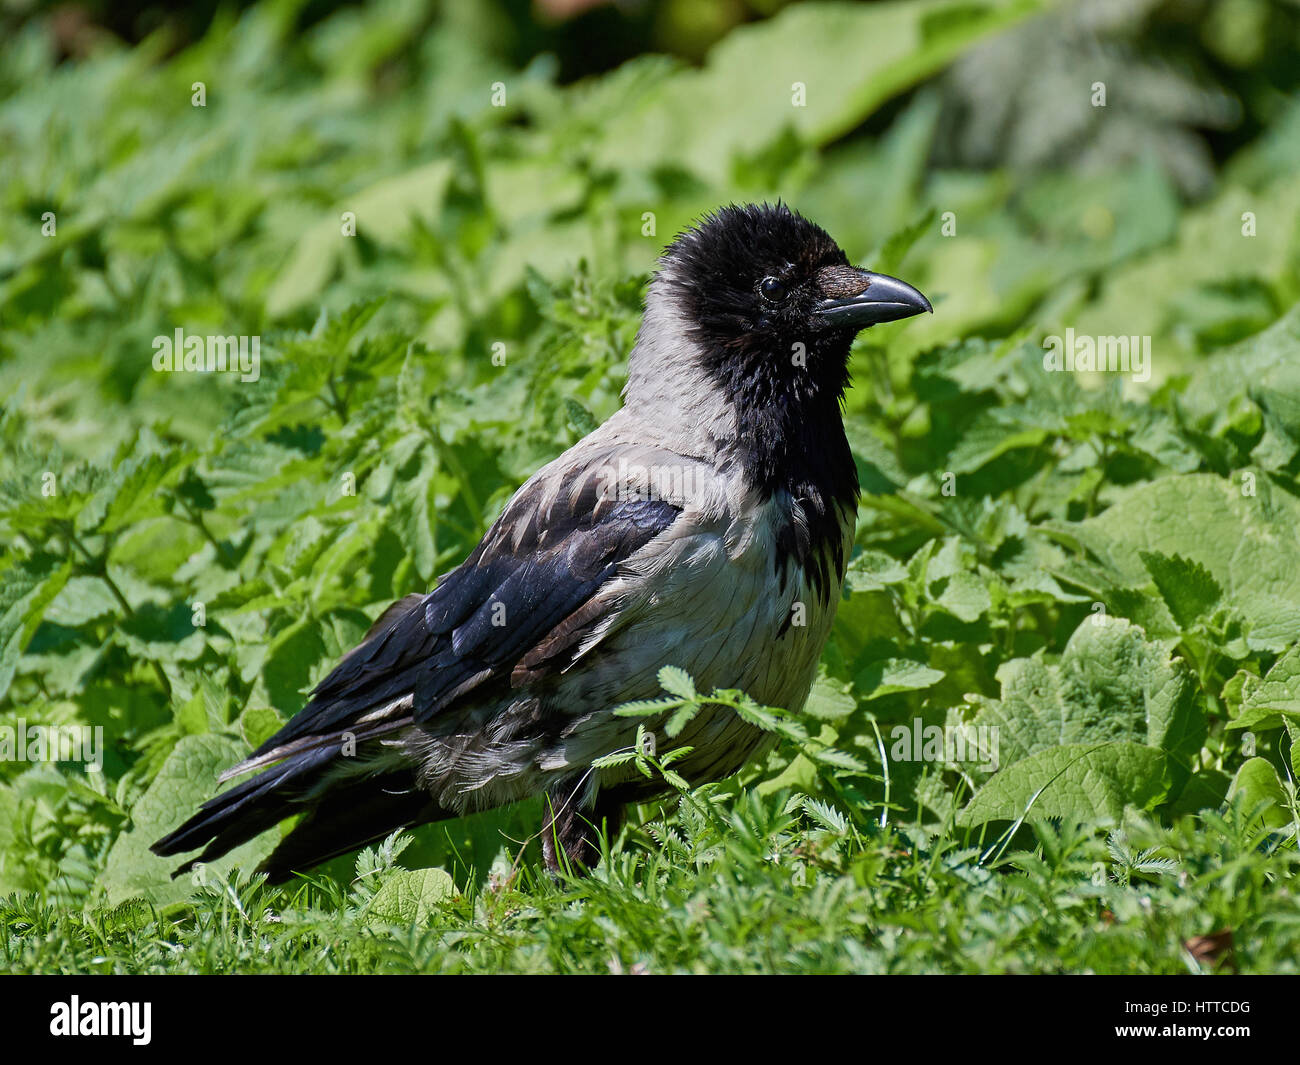 Hooded crow assis sur le sol dans la végétation Banque D'Images